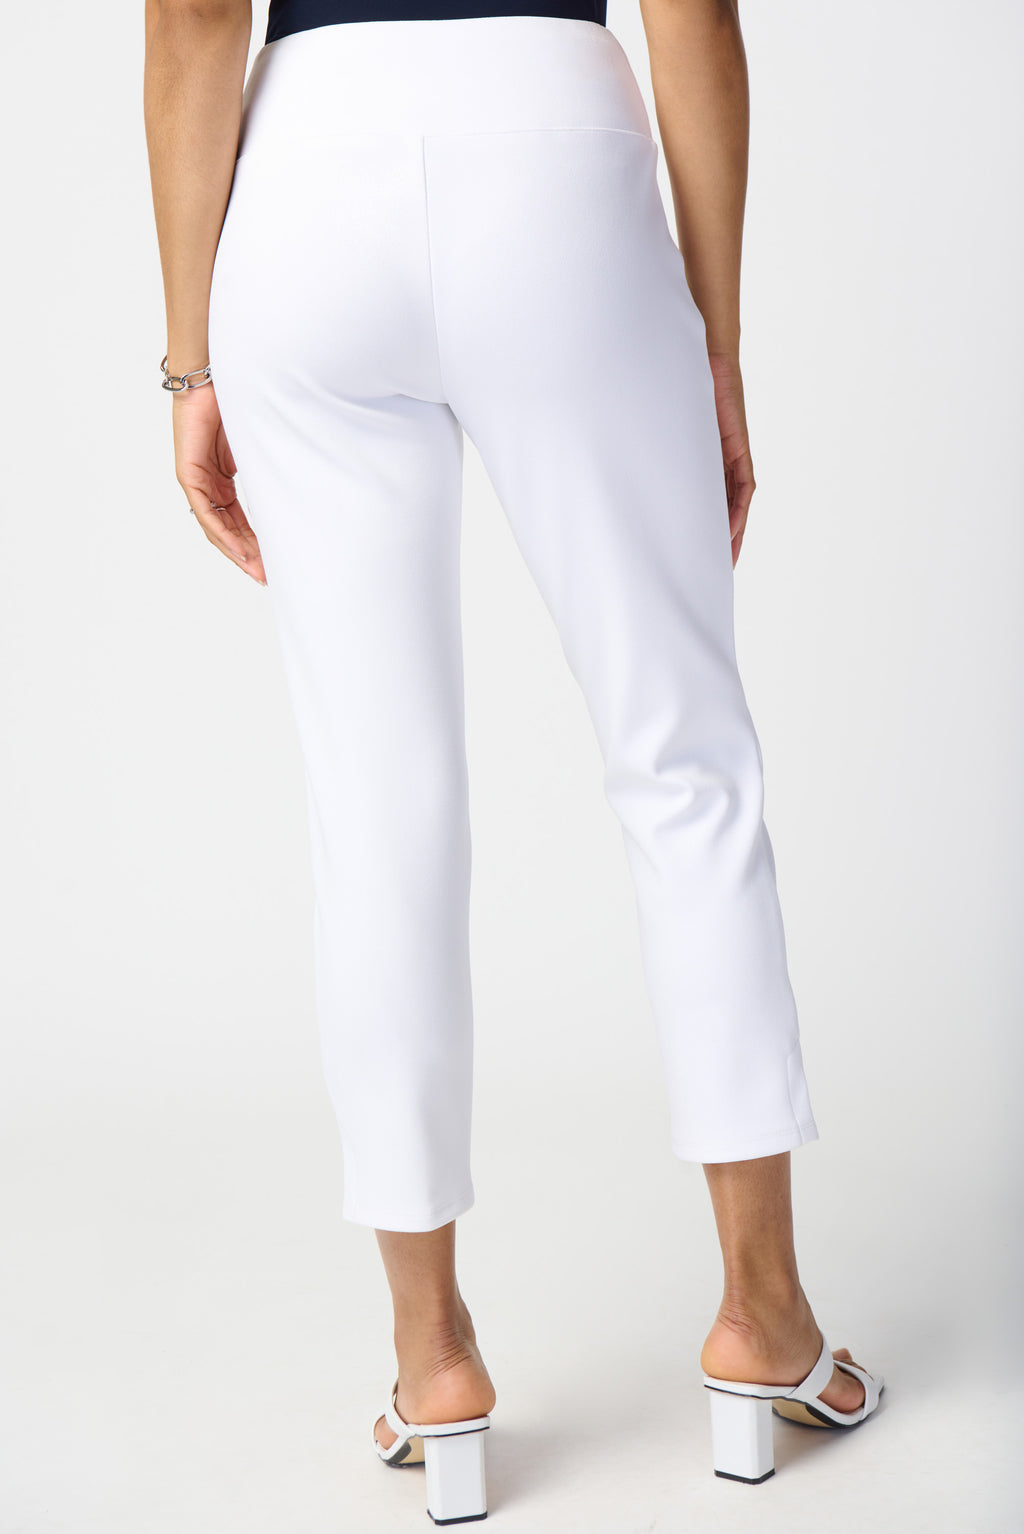 Joseph Ribkoff Vanilla Crop Pull-On Pants Style 241105